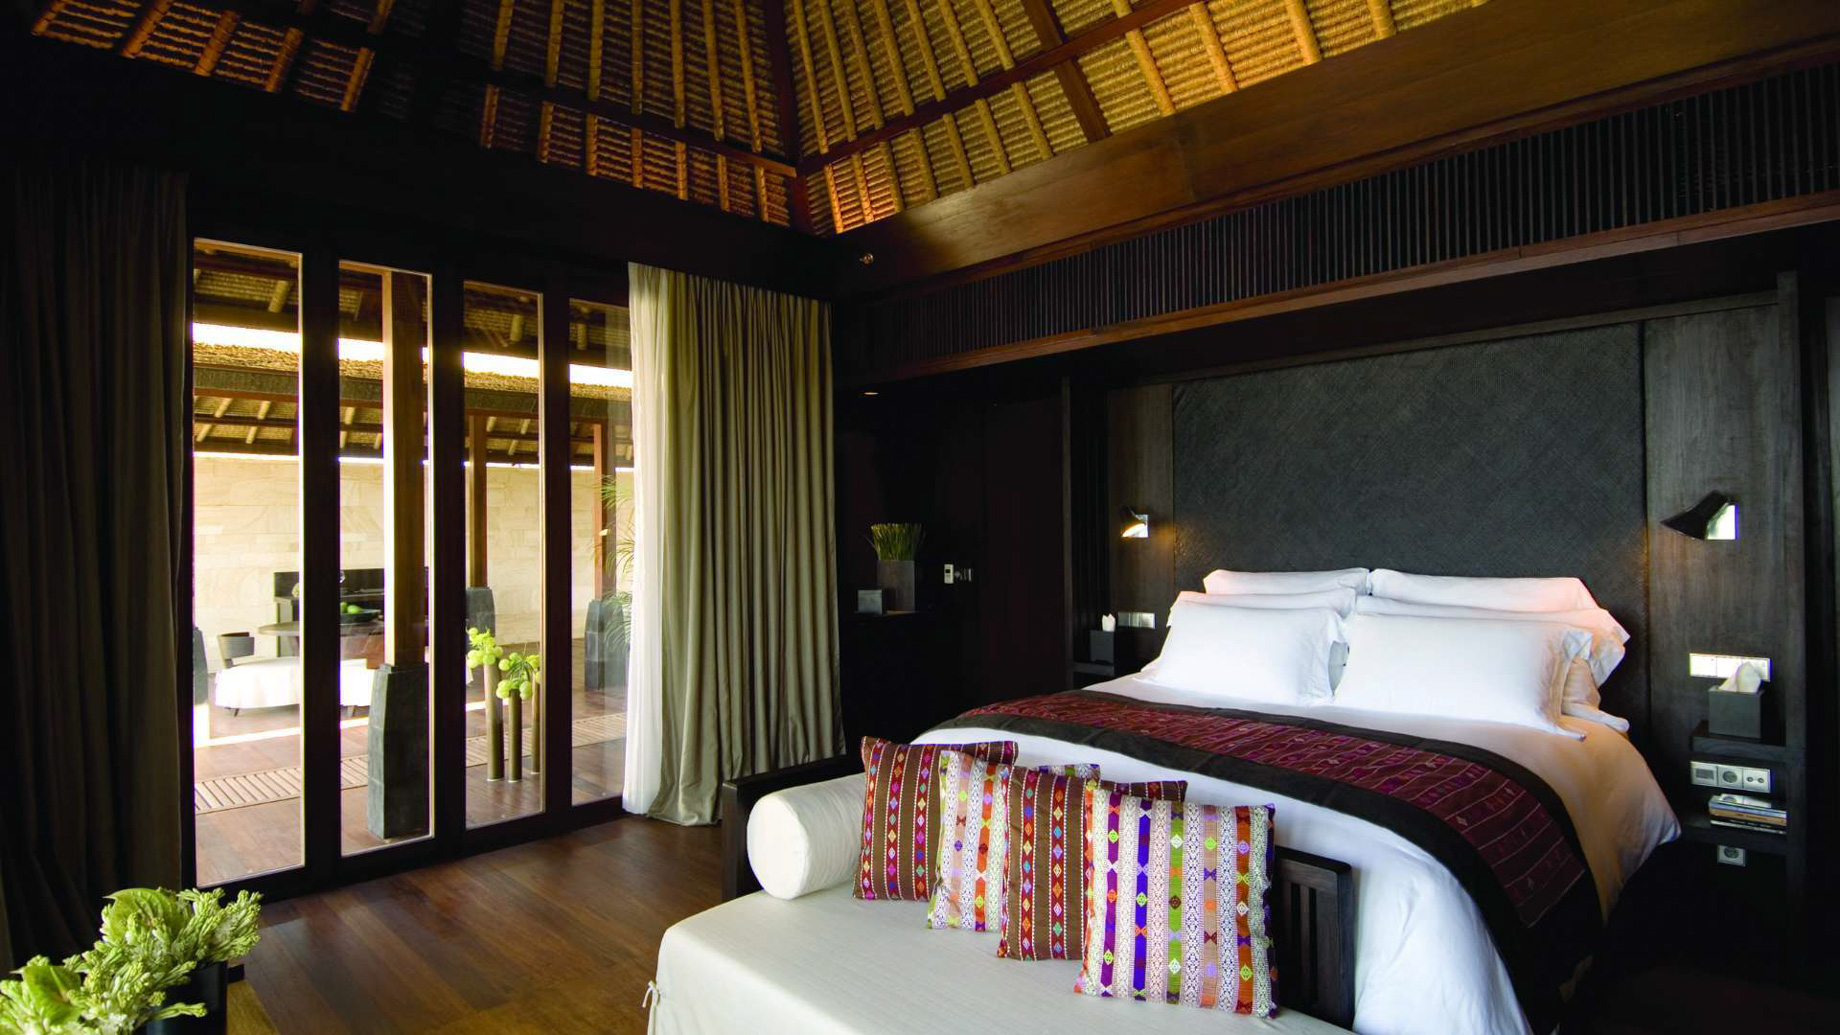 Bvlgari Resort Bali – Uluwatu, Bali, Indonesia – Ocean View Villa Bedroom